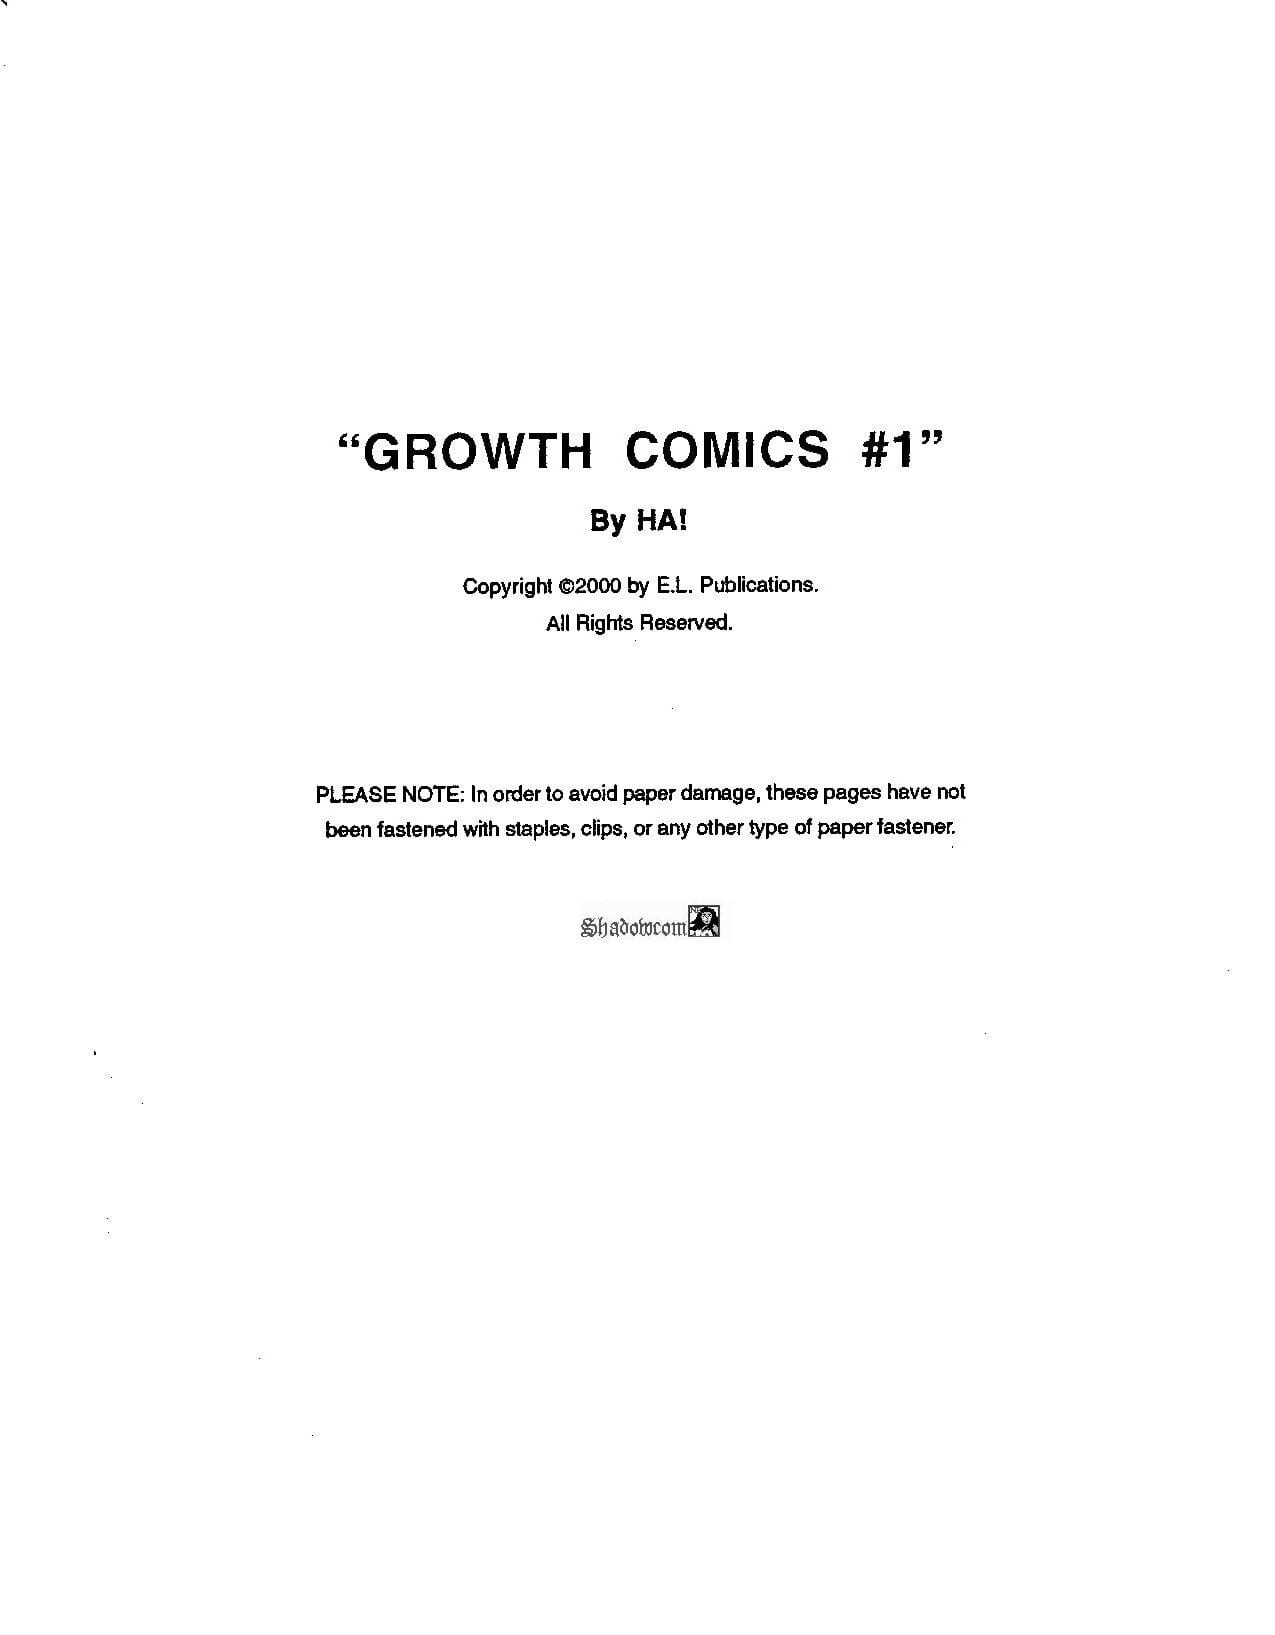 el crecimiento de la comics #1 ilustrado Comic historia #1 page 1